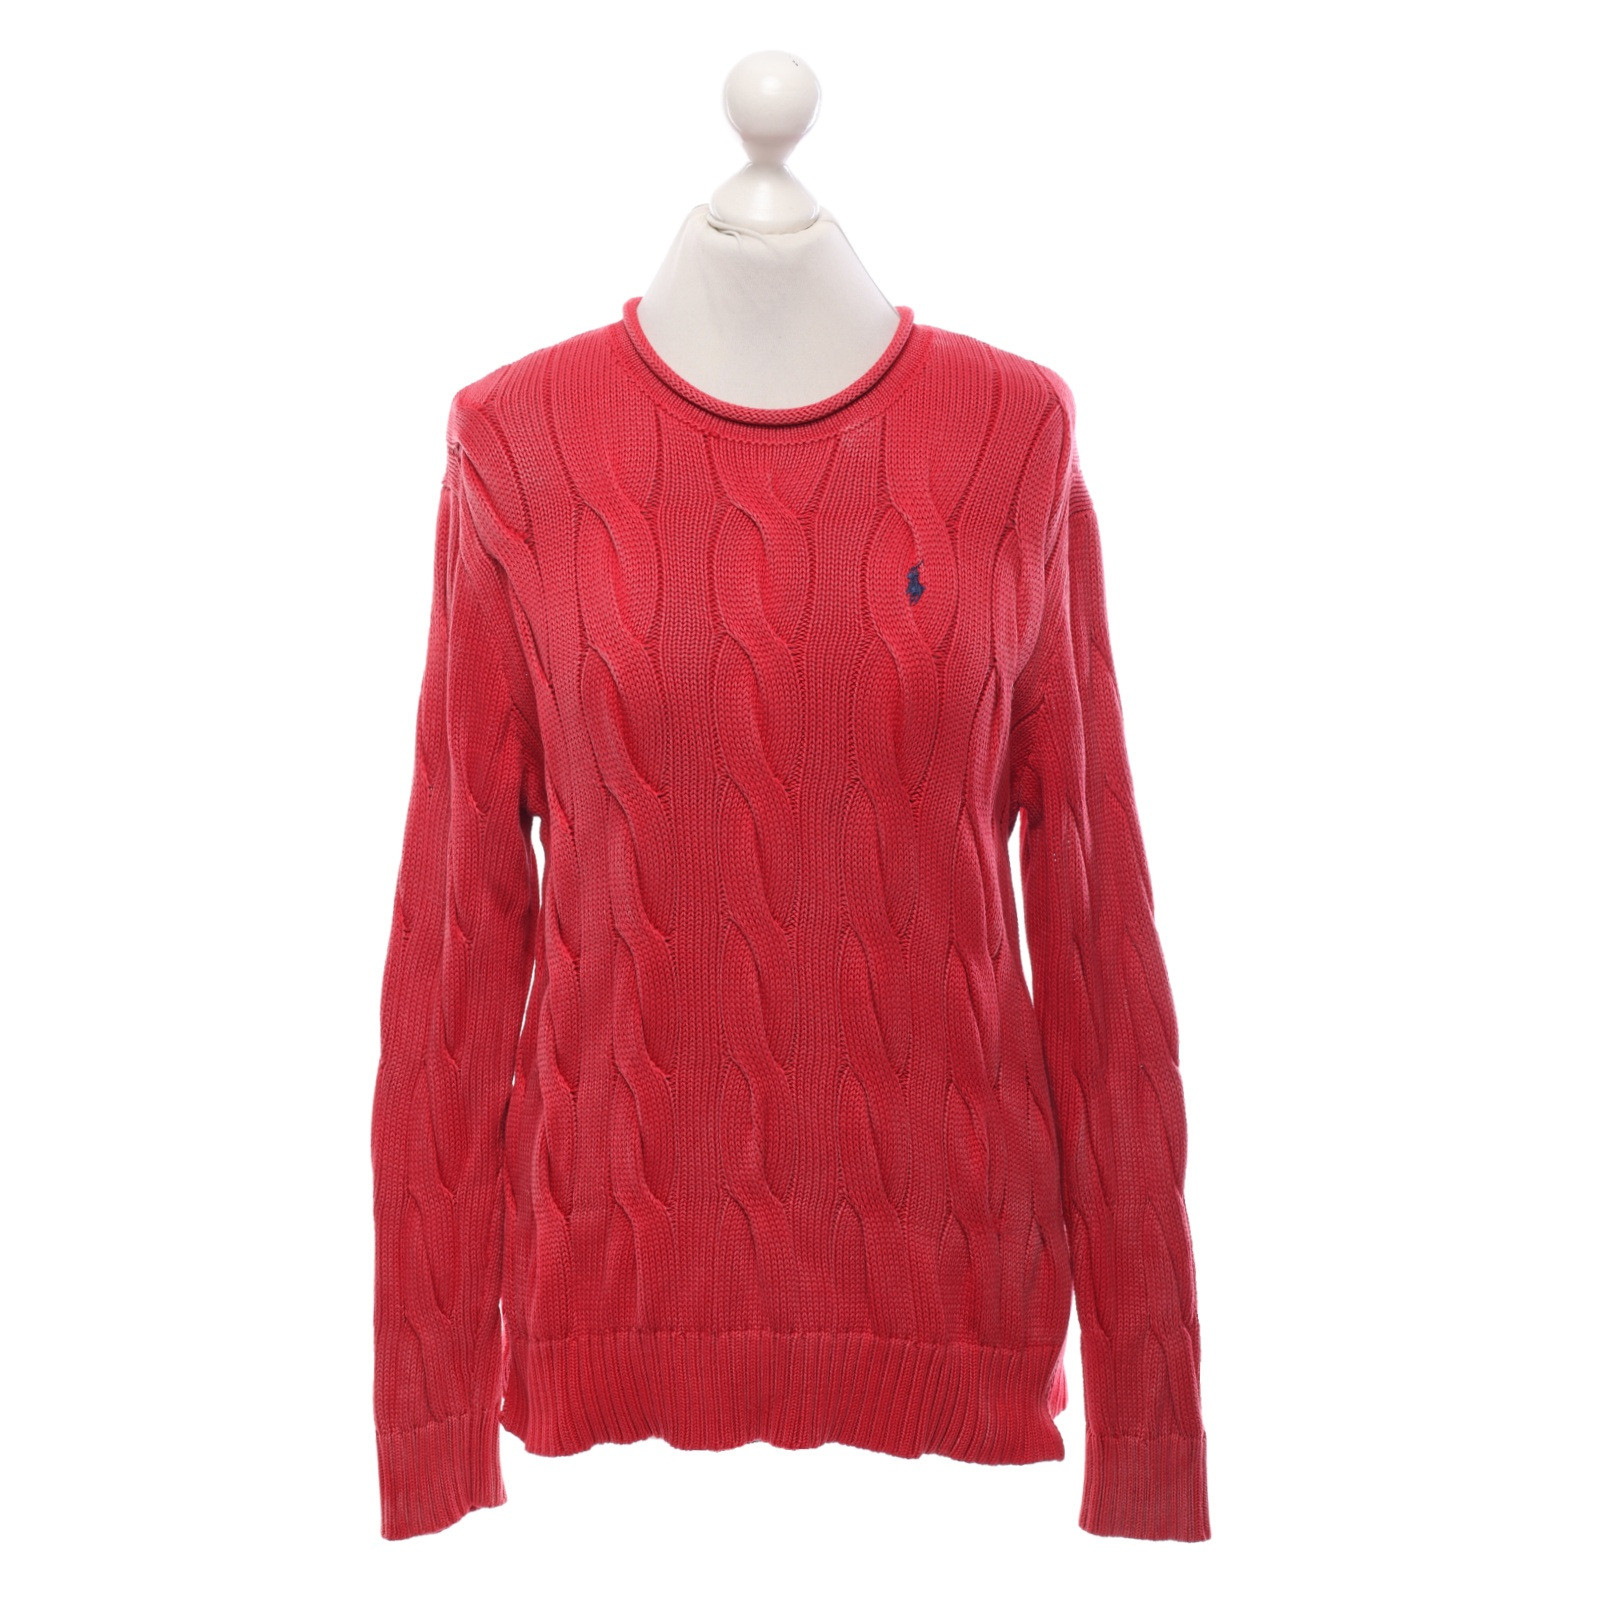 POLO RALPH LAUREN Women's Knitwear Cotton in Red Size: M